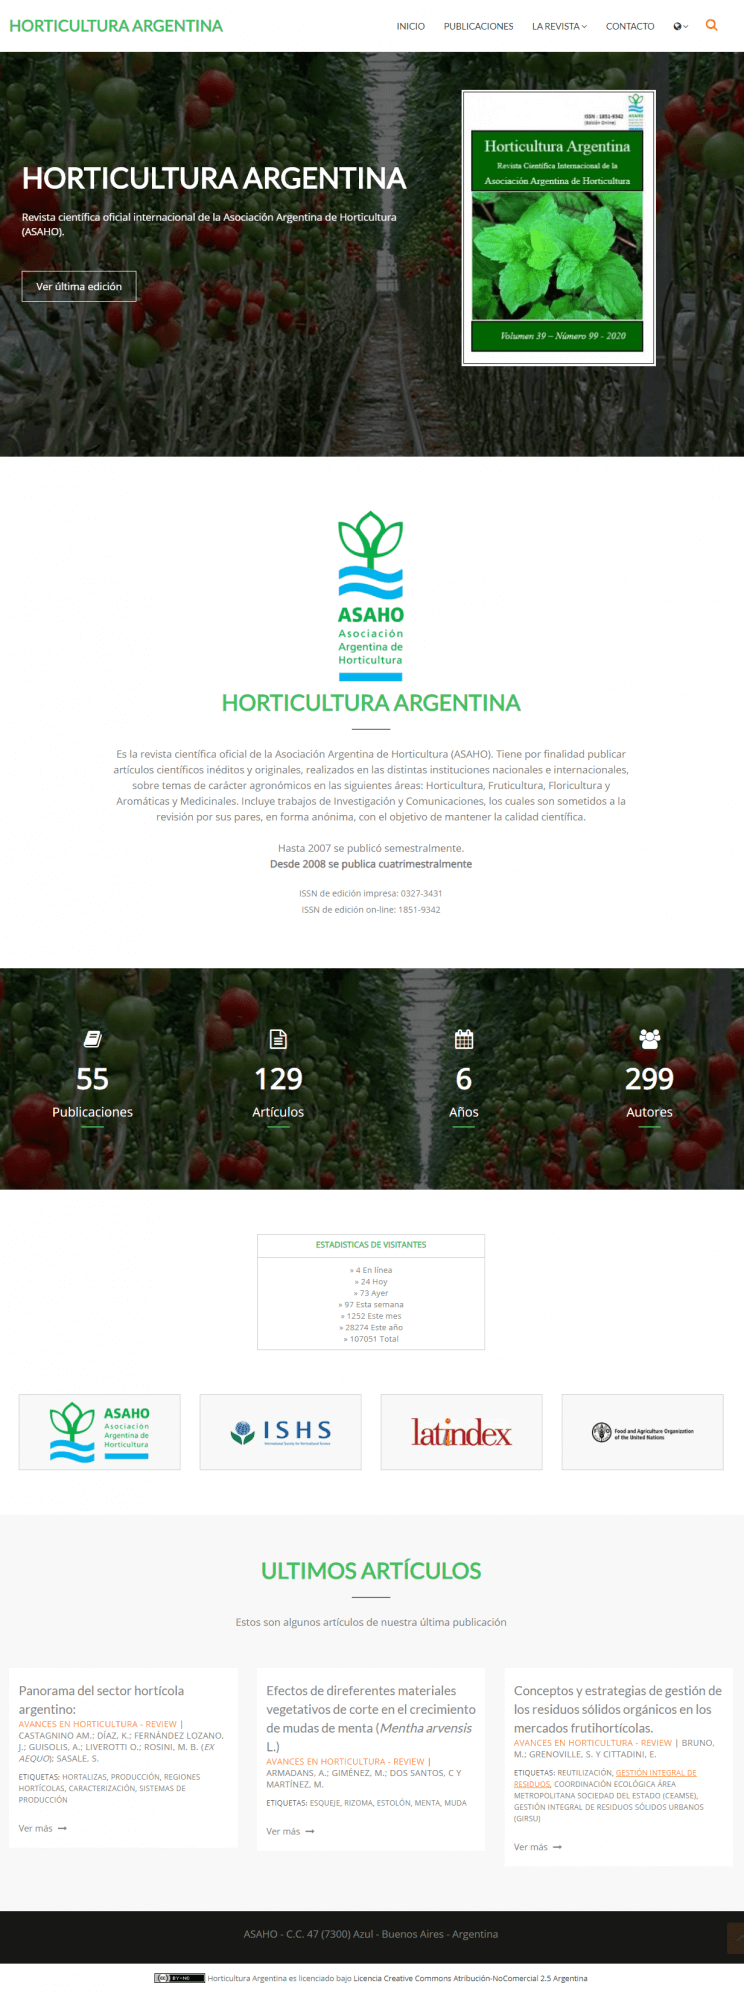 Horticultura Argentina